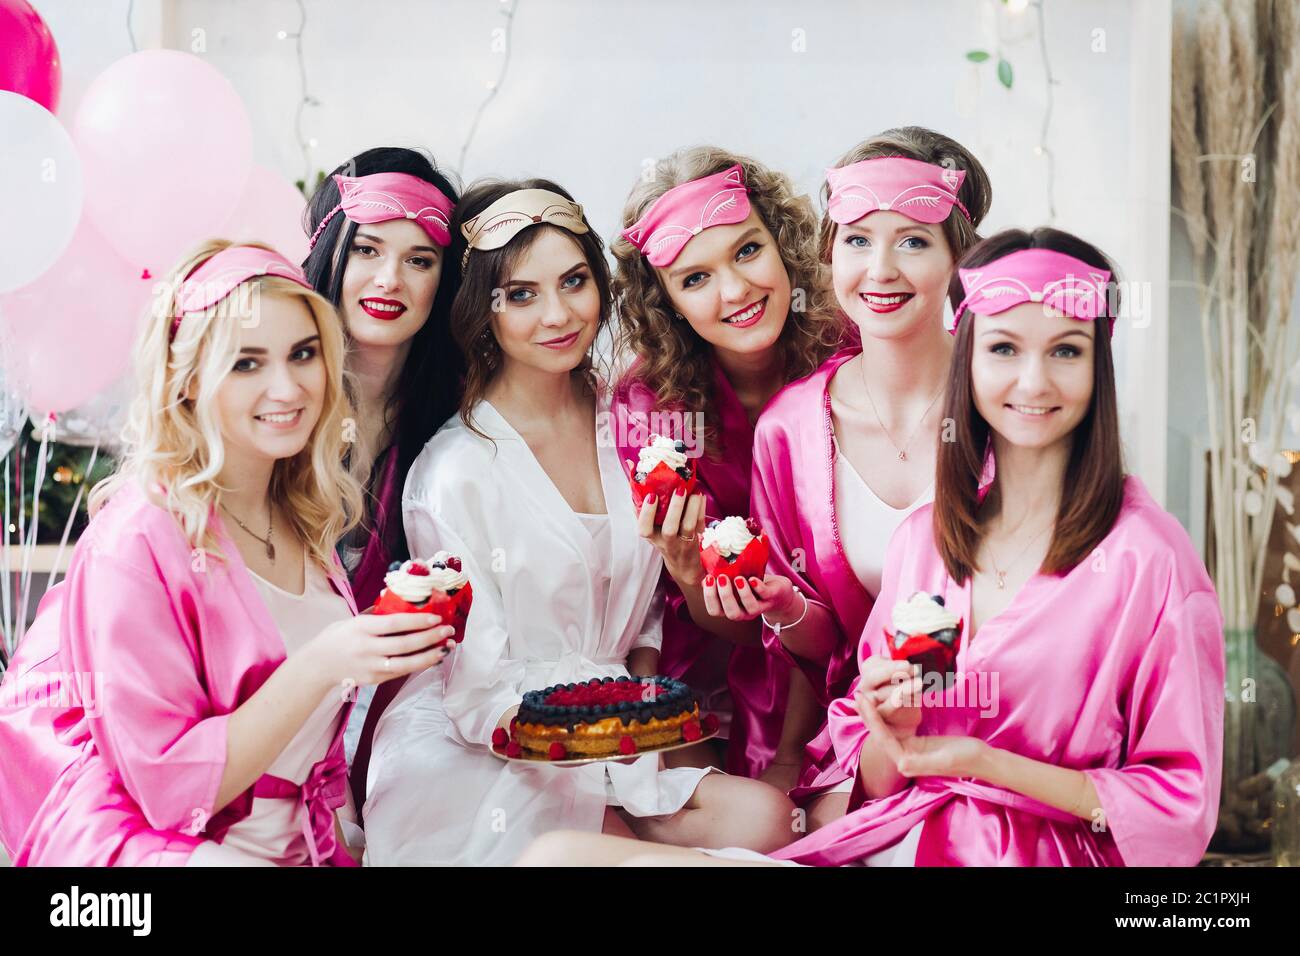 Belle ragazze in rosa le vesti e le maschere di sospensione con il dessert a docce nuziale. Foto Stock